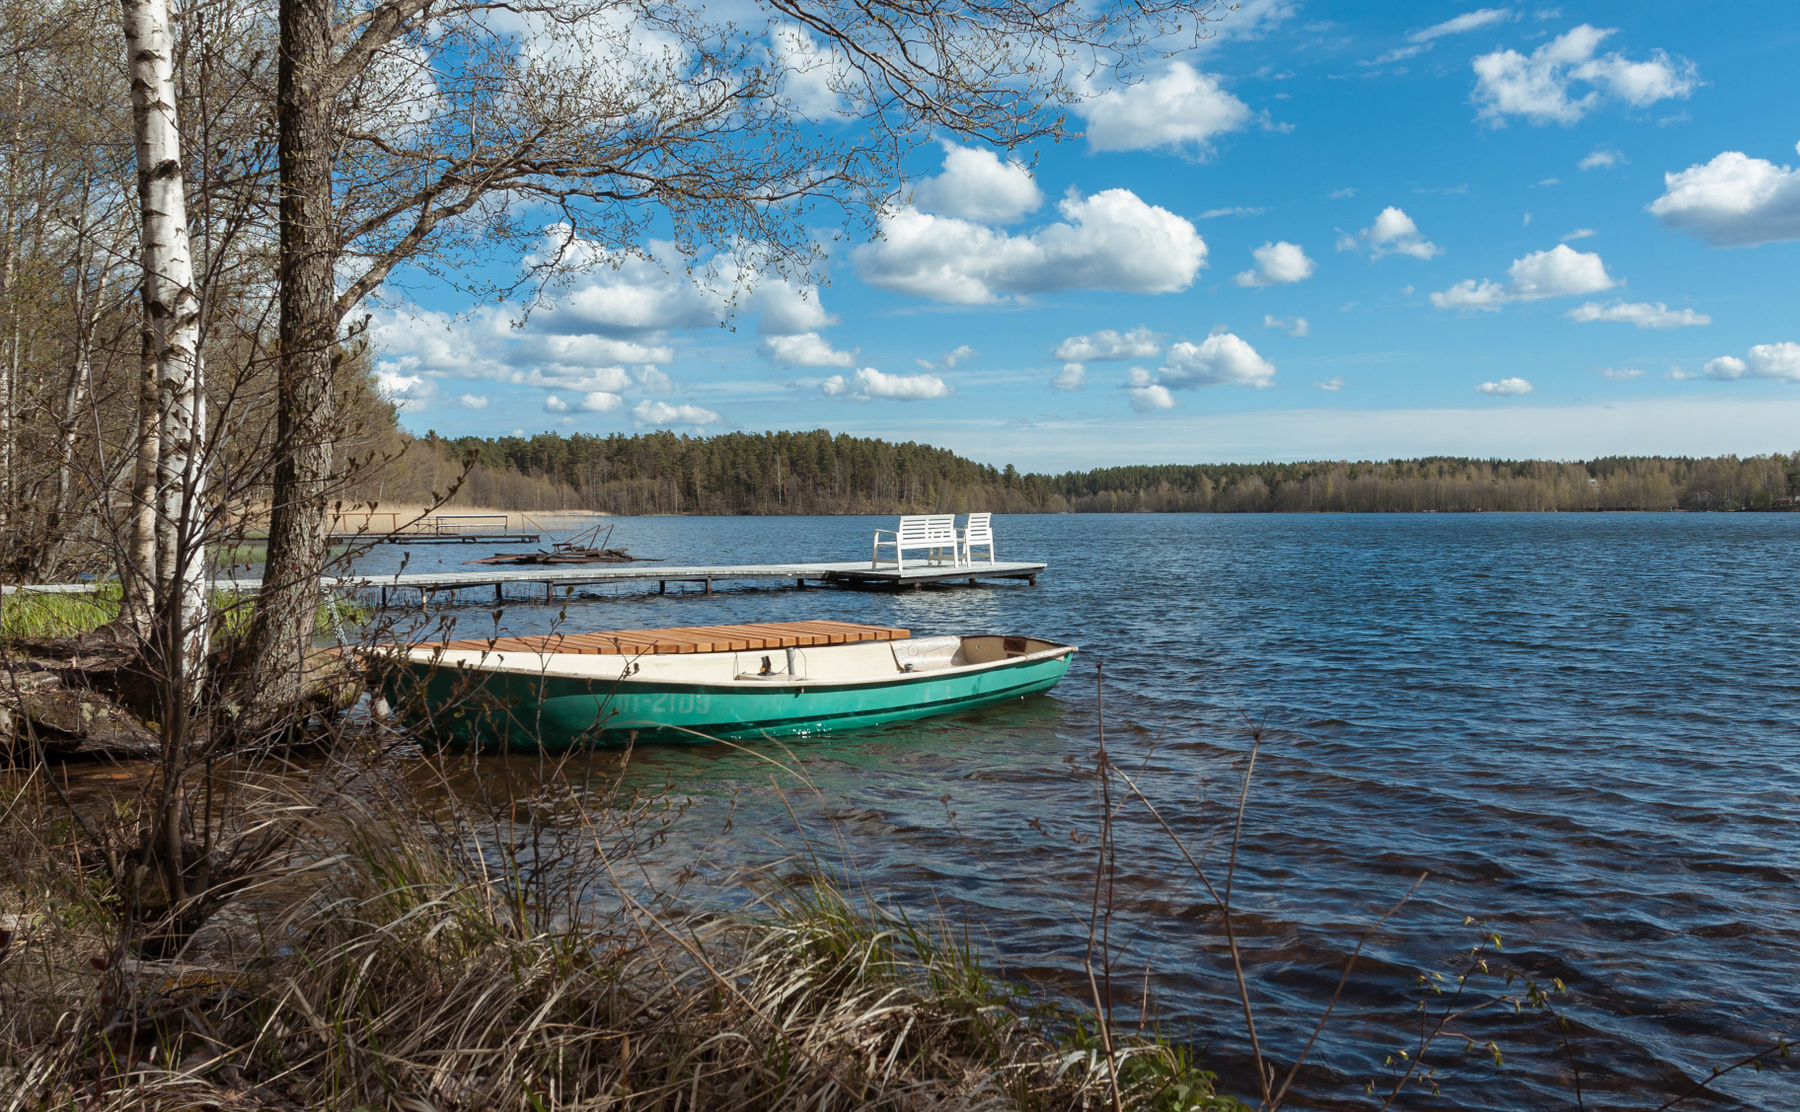 Незатейливый весенний пейзаж. Раздолинское озеро в Ленинградской области. 